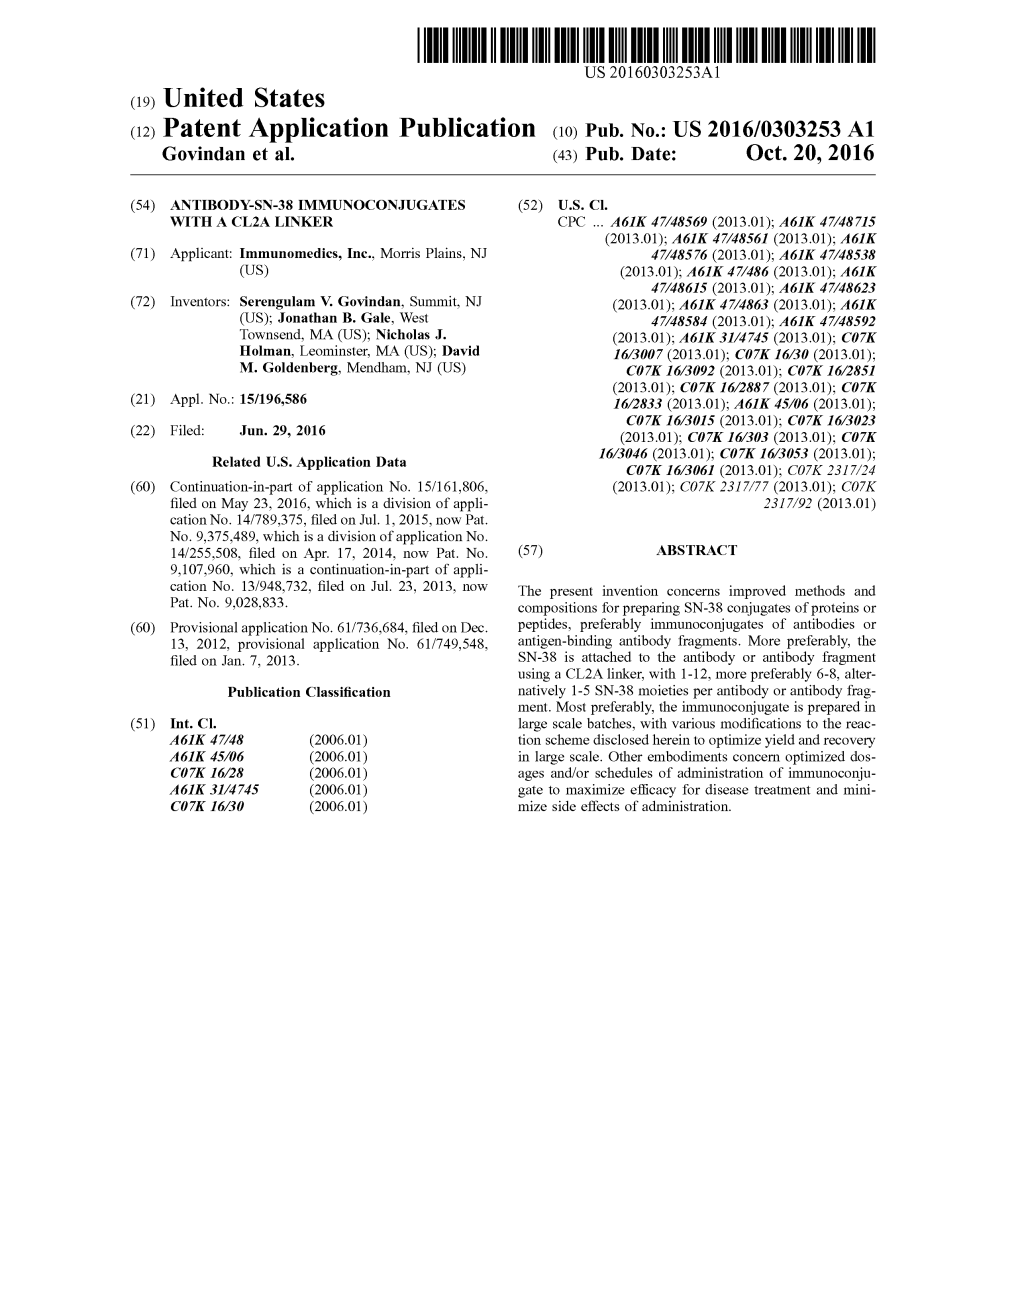 (2) Patent Application Publication (10) Pub. No.: US 2016/0303253 A1 Govindan Et Al